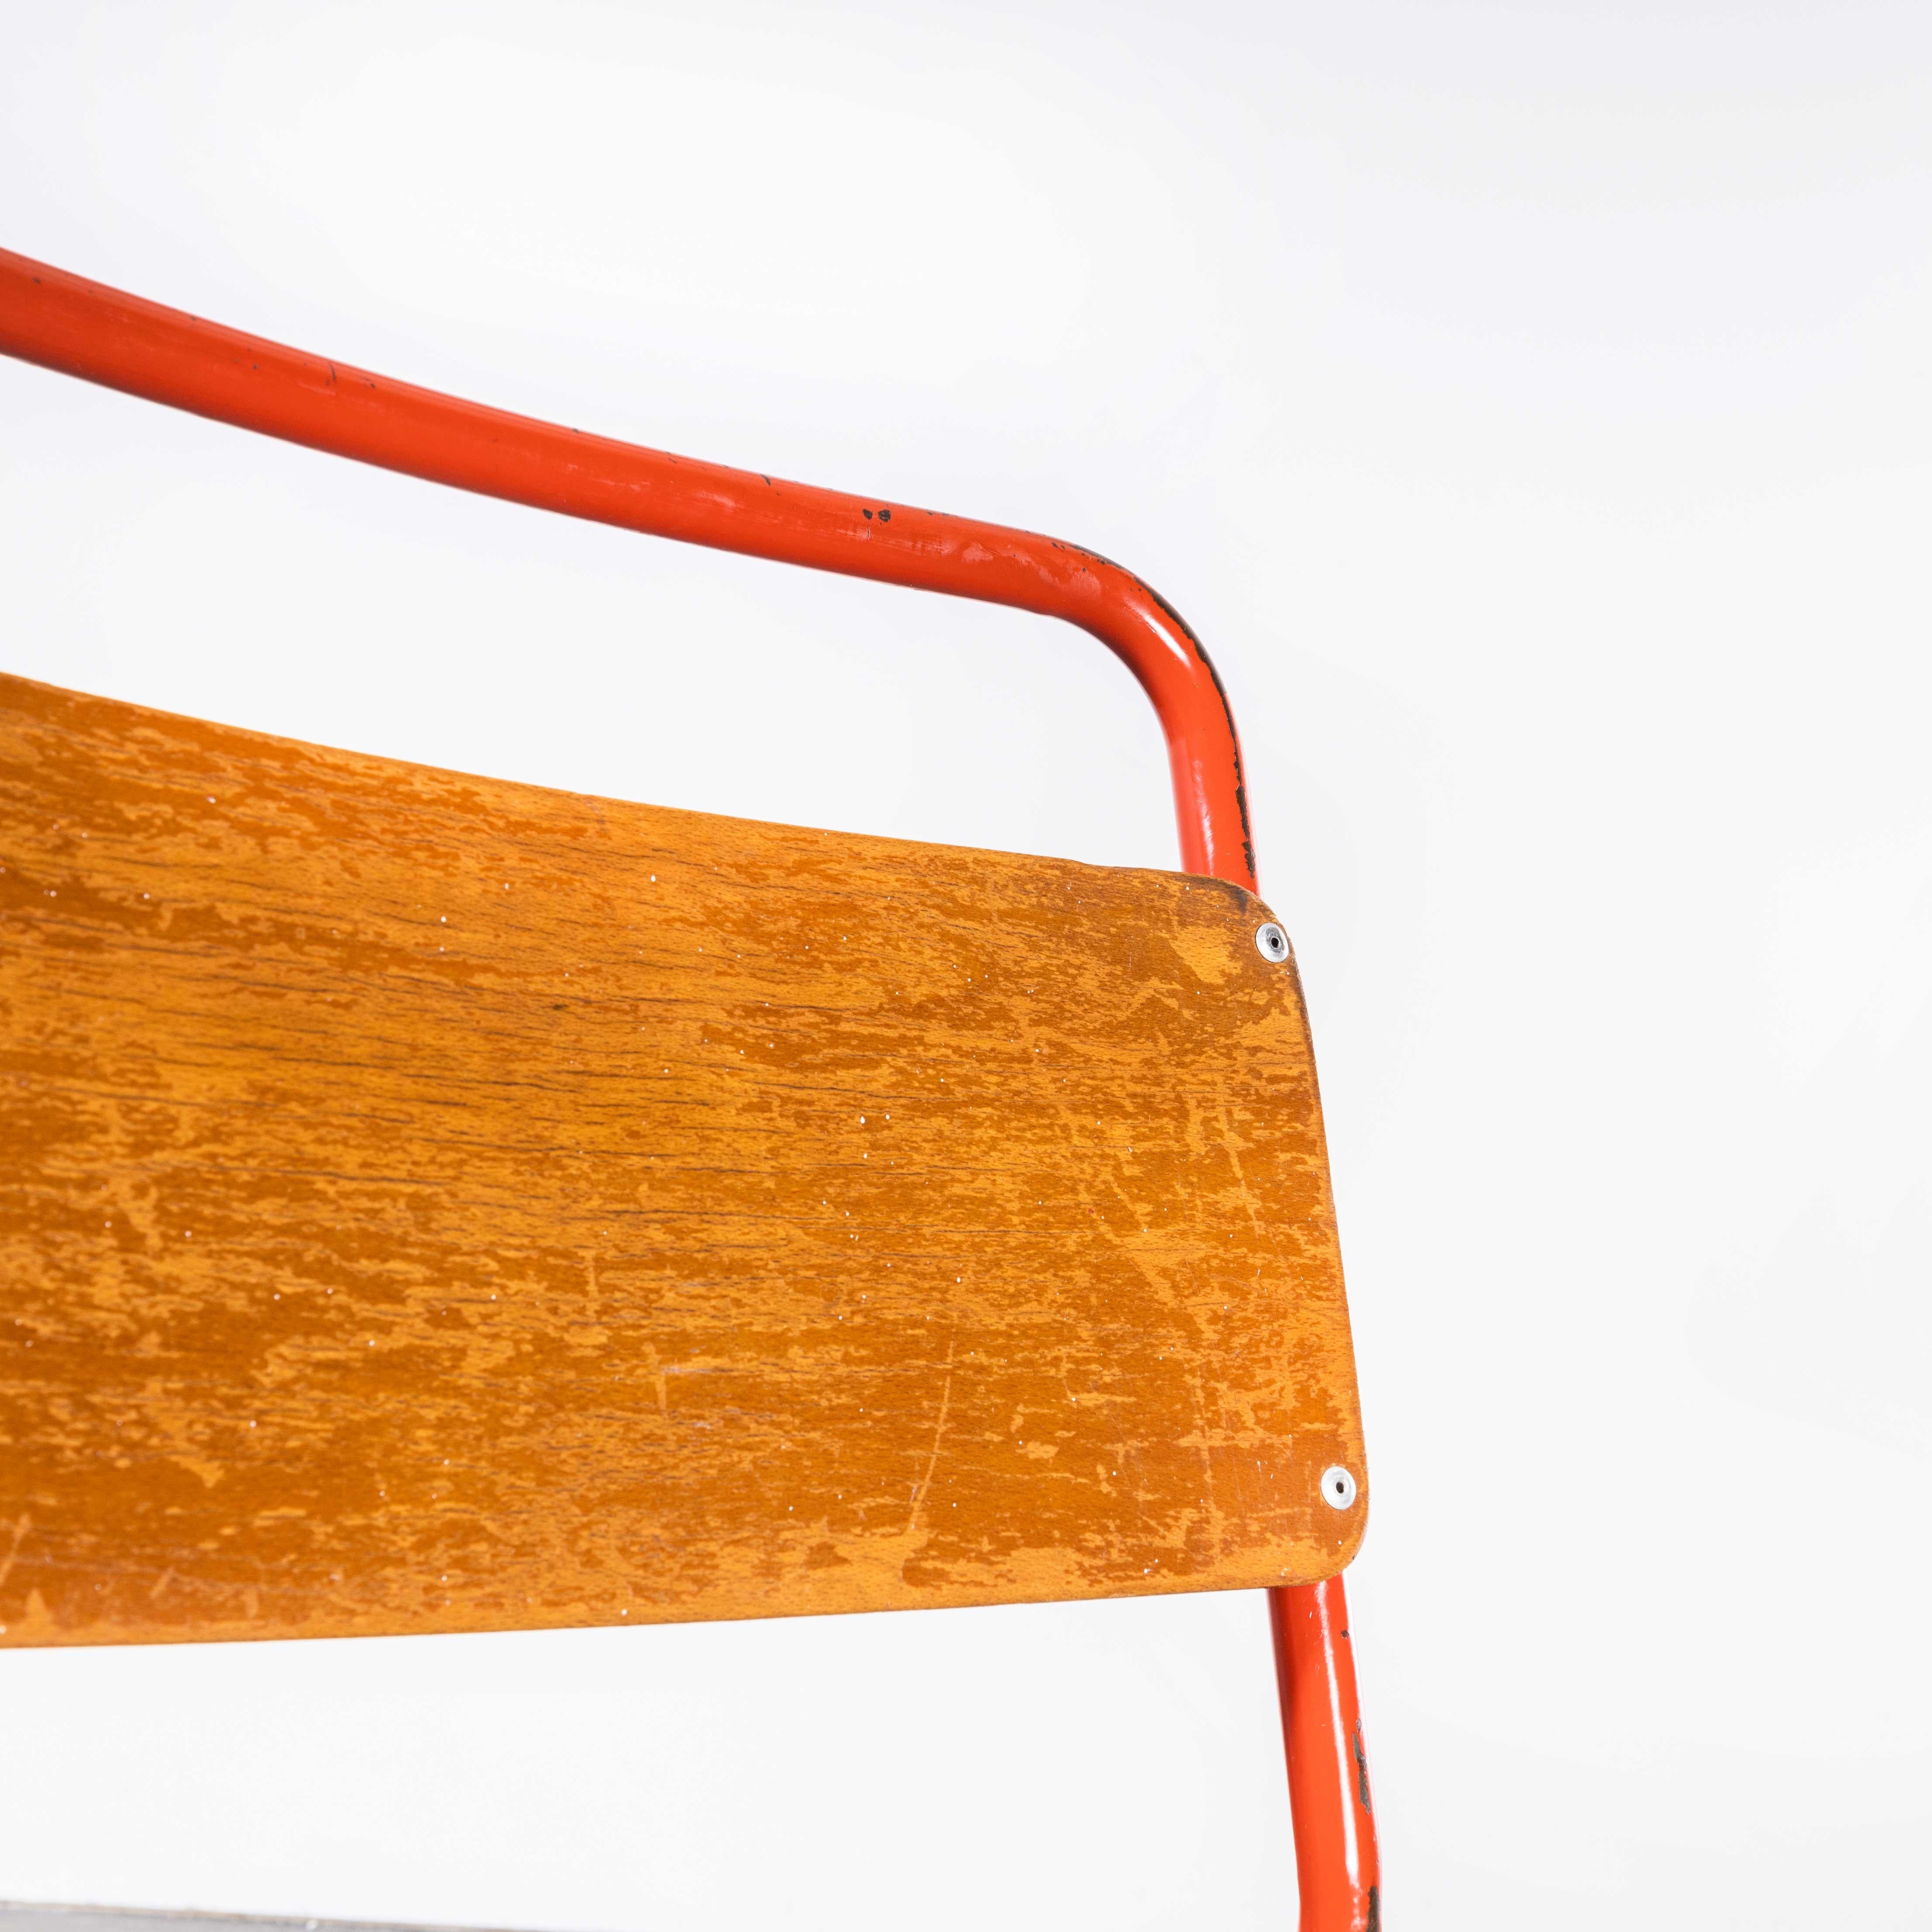 Chaises de salle à manger Cox en métal rouge tubulaire des années 1950 - ensemble de quatre chaises
Chaises de salle à manger Cox en métal rouge tubulaire des années 1950 - jeu de quatre. Cox était l'un des plus grands producteurs de chaises